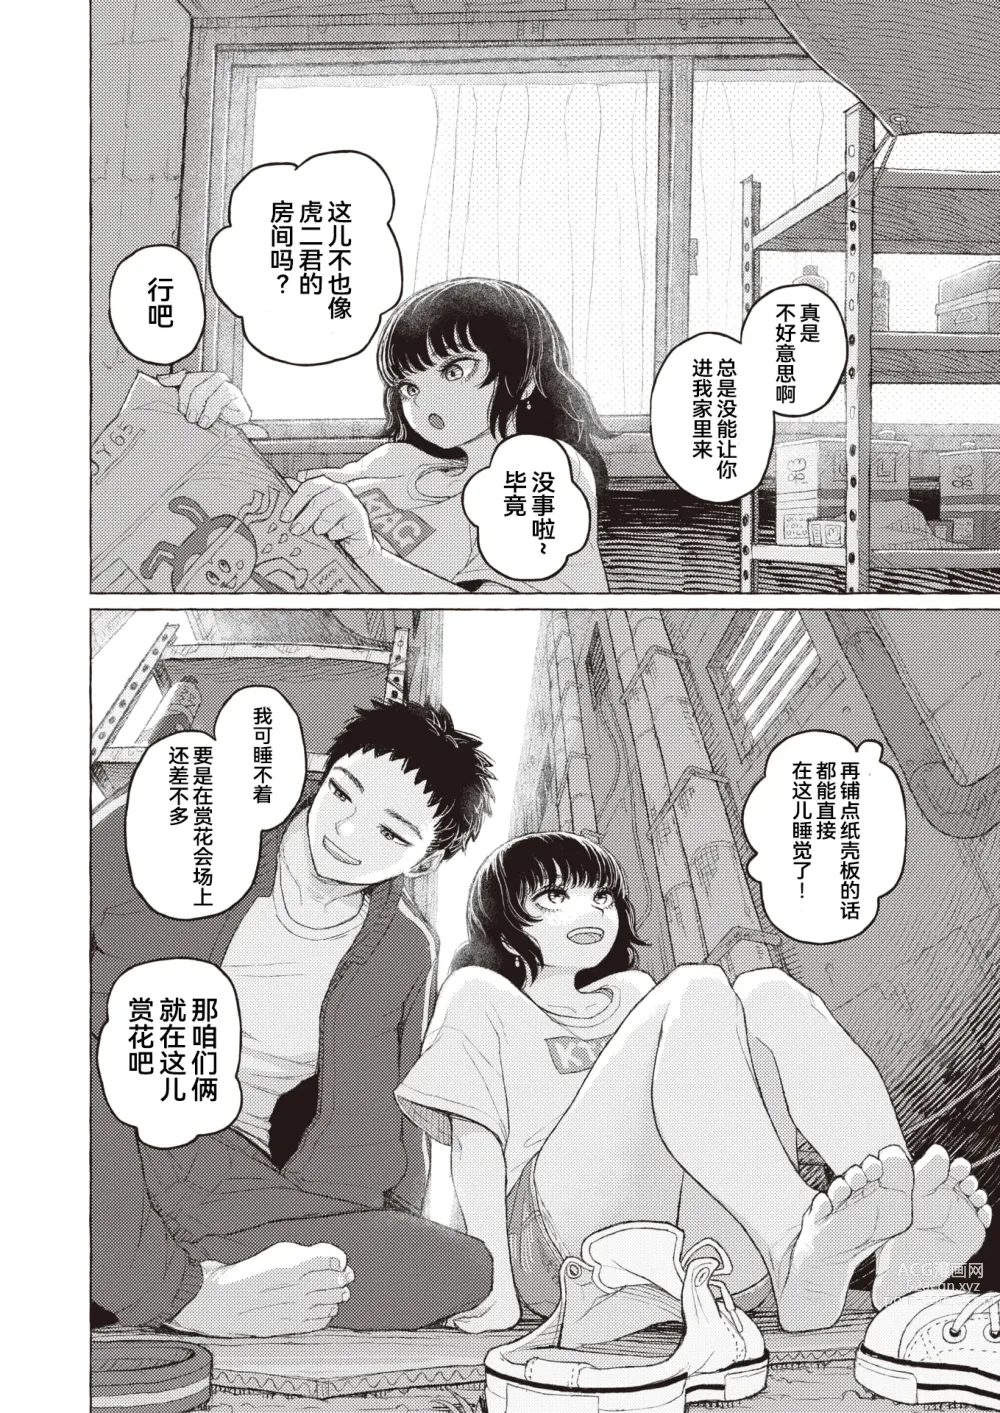 Page 4 of manga 纯情小路